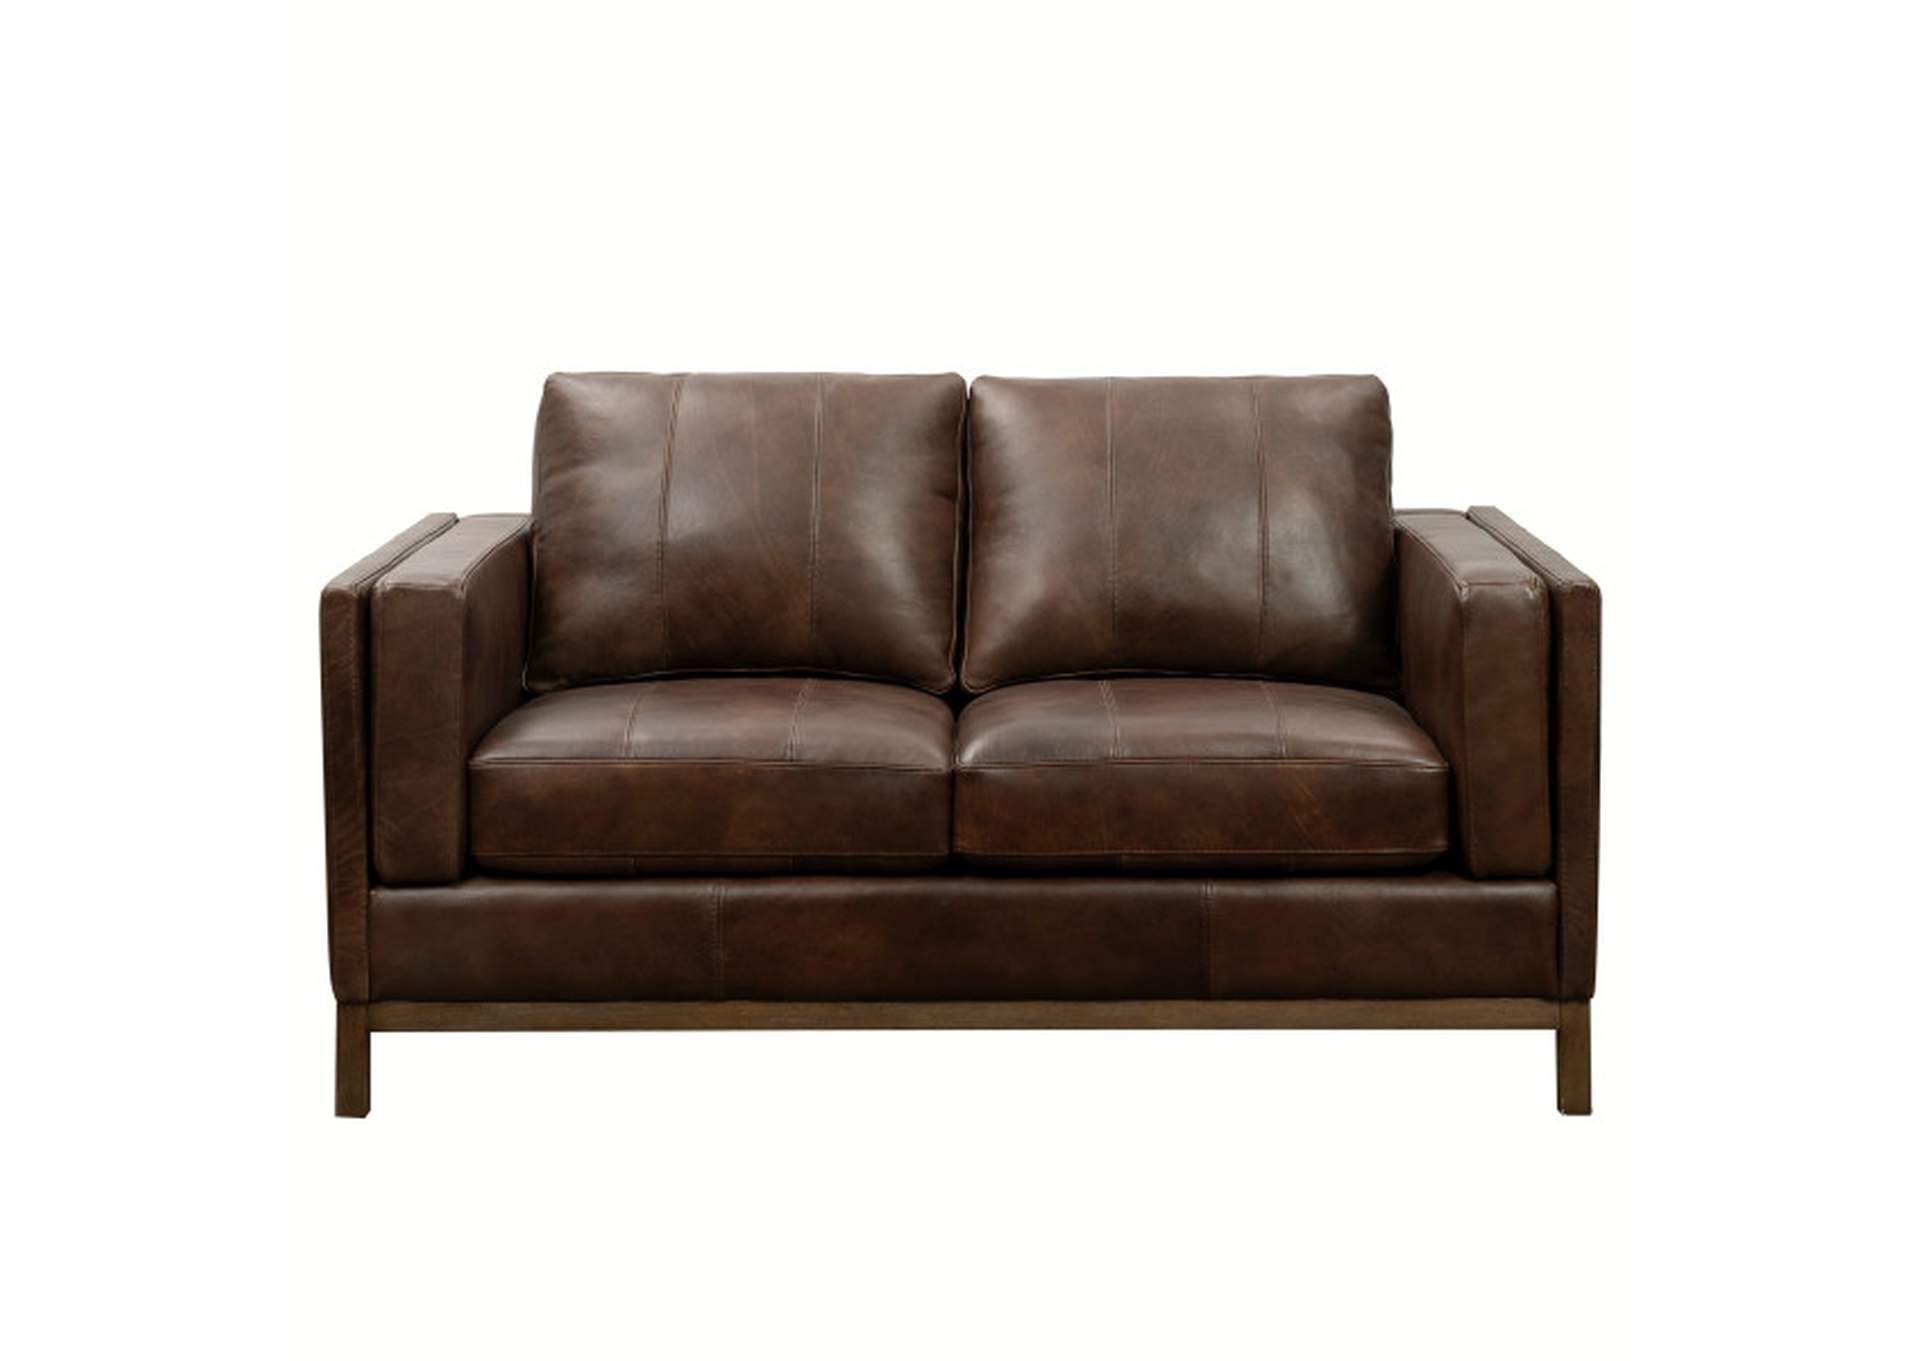 Drake Brown Leather Sofa Set W/ Sofa & Loveseat,Pulaski Furniture